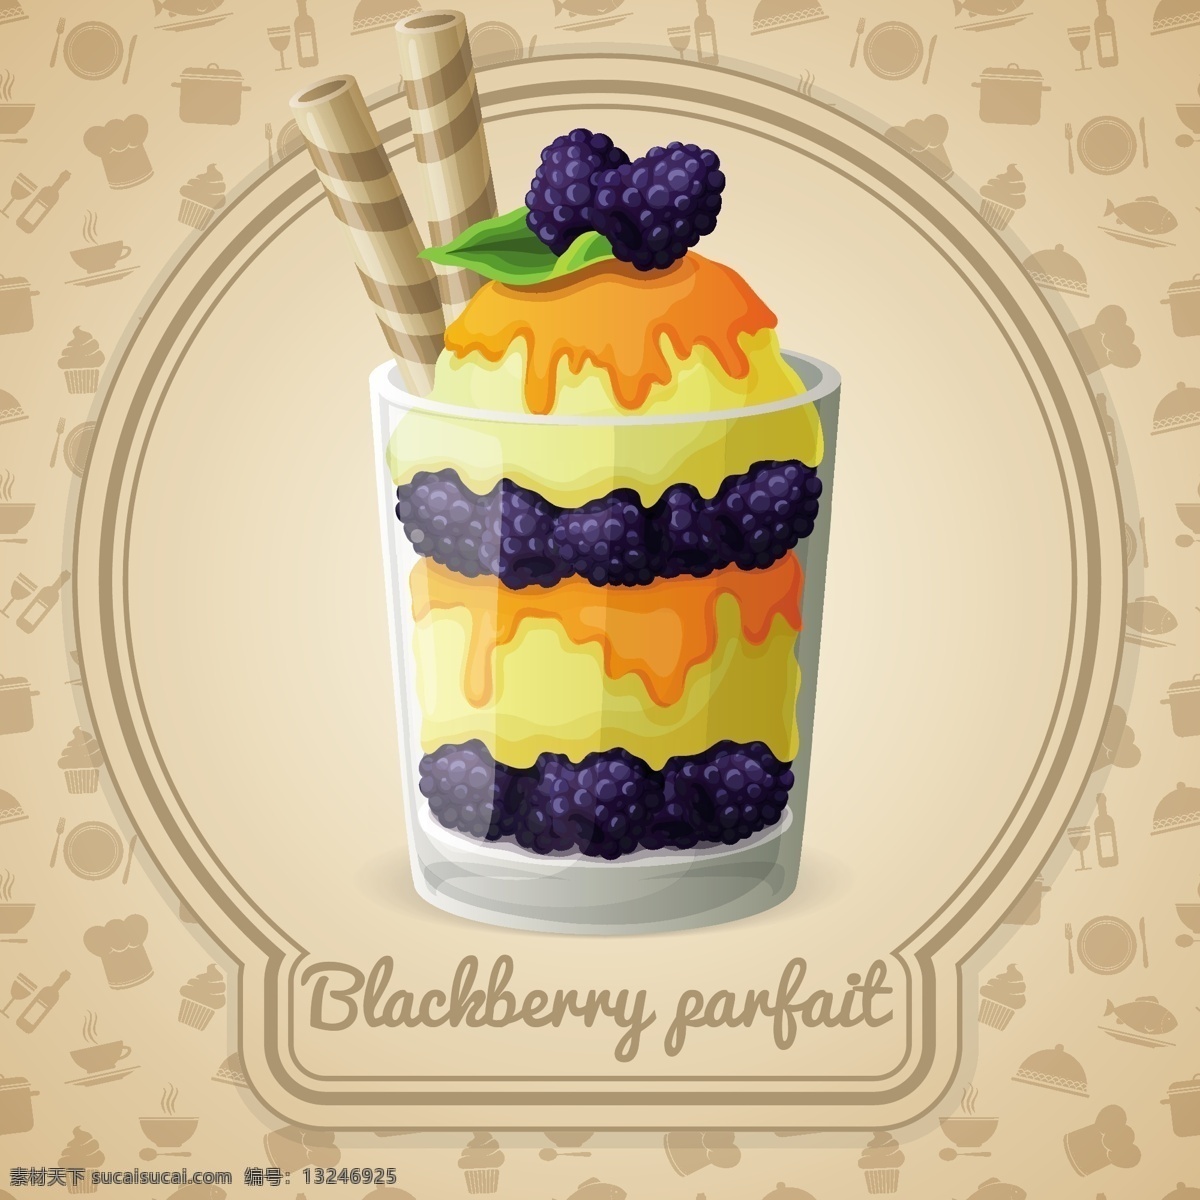 美味 蓝莓 甜品 矢量 冰激凌 矢量图 其他矢量图